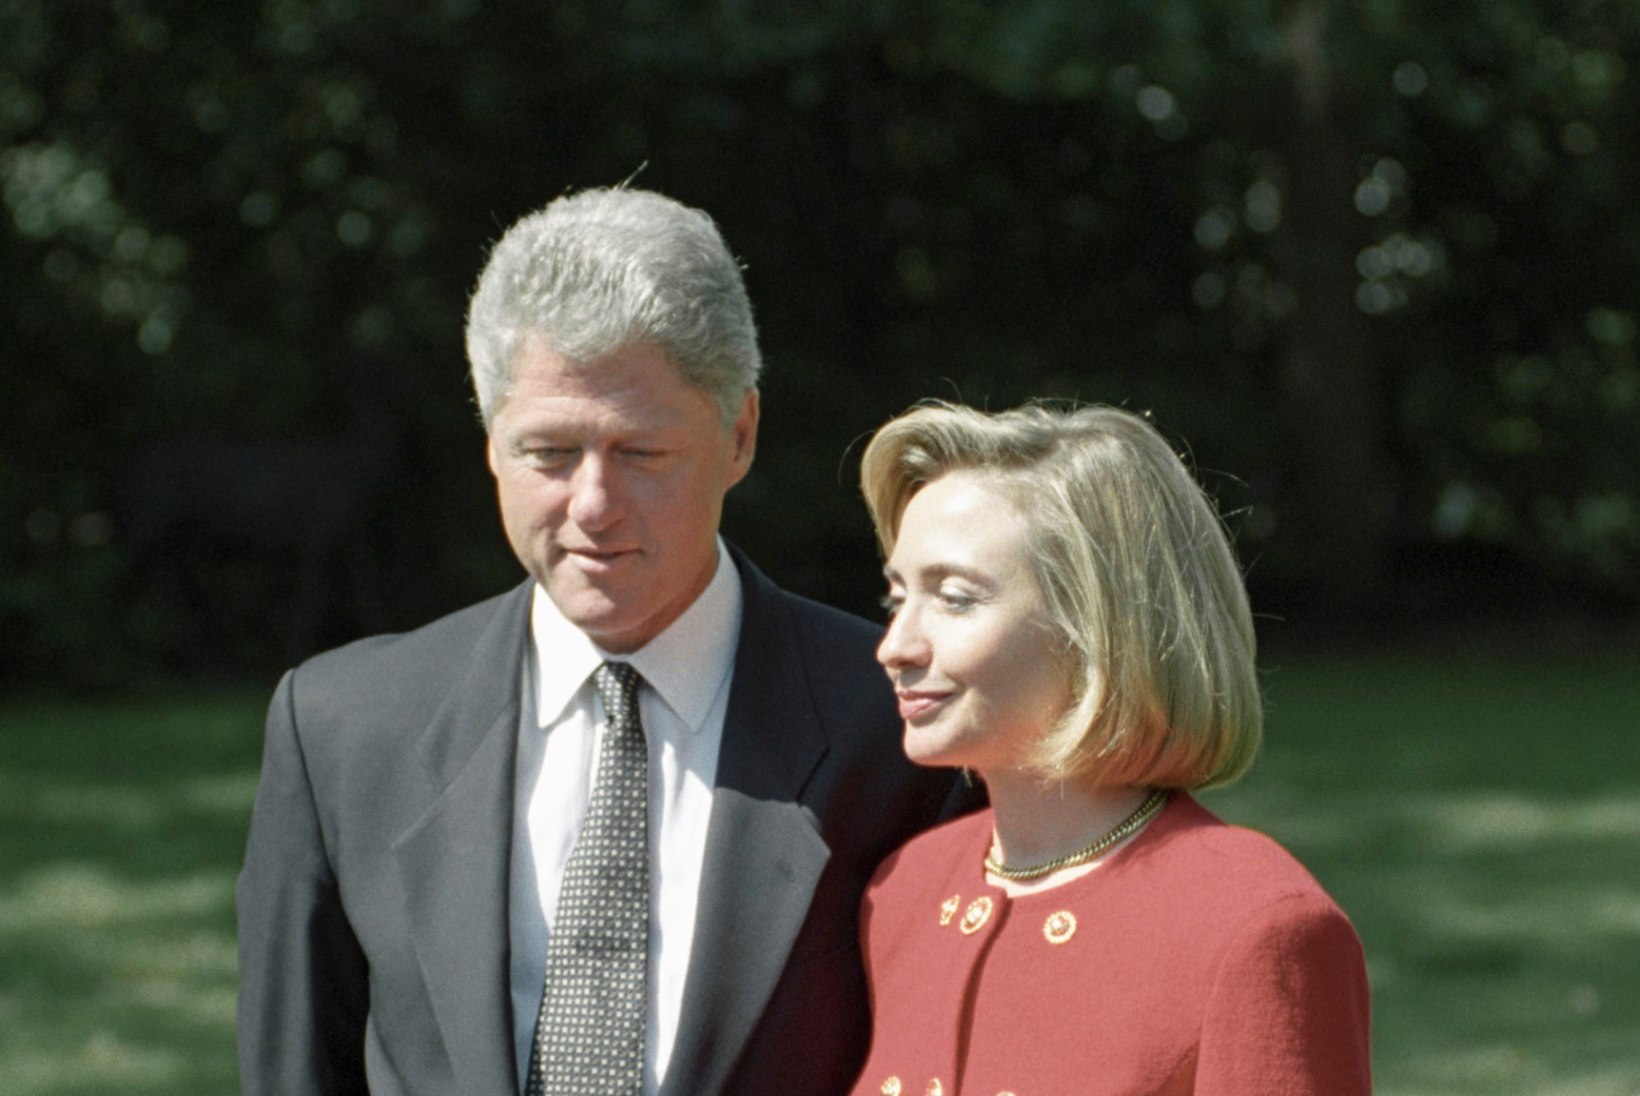 Sõbranna salapäevik: Hillary Clinton pidas Monica Lewinskyt oma abikaasa ahistajaks